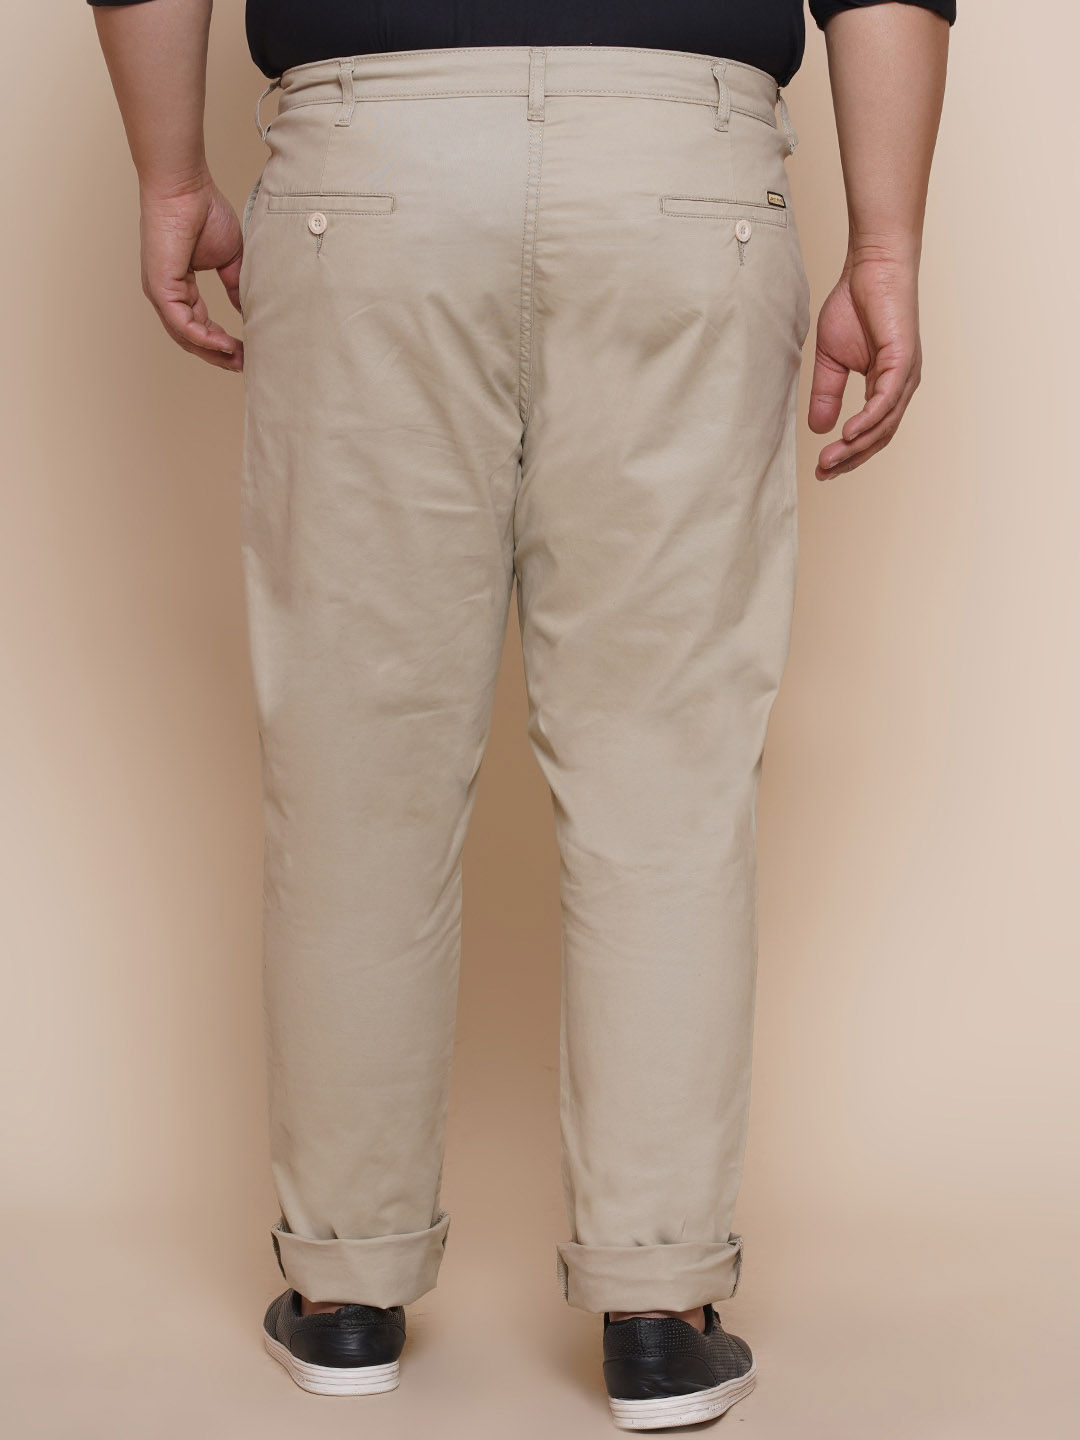 bottomwear/trousers/JPTR2195W/jptr2195w-5.jpg